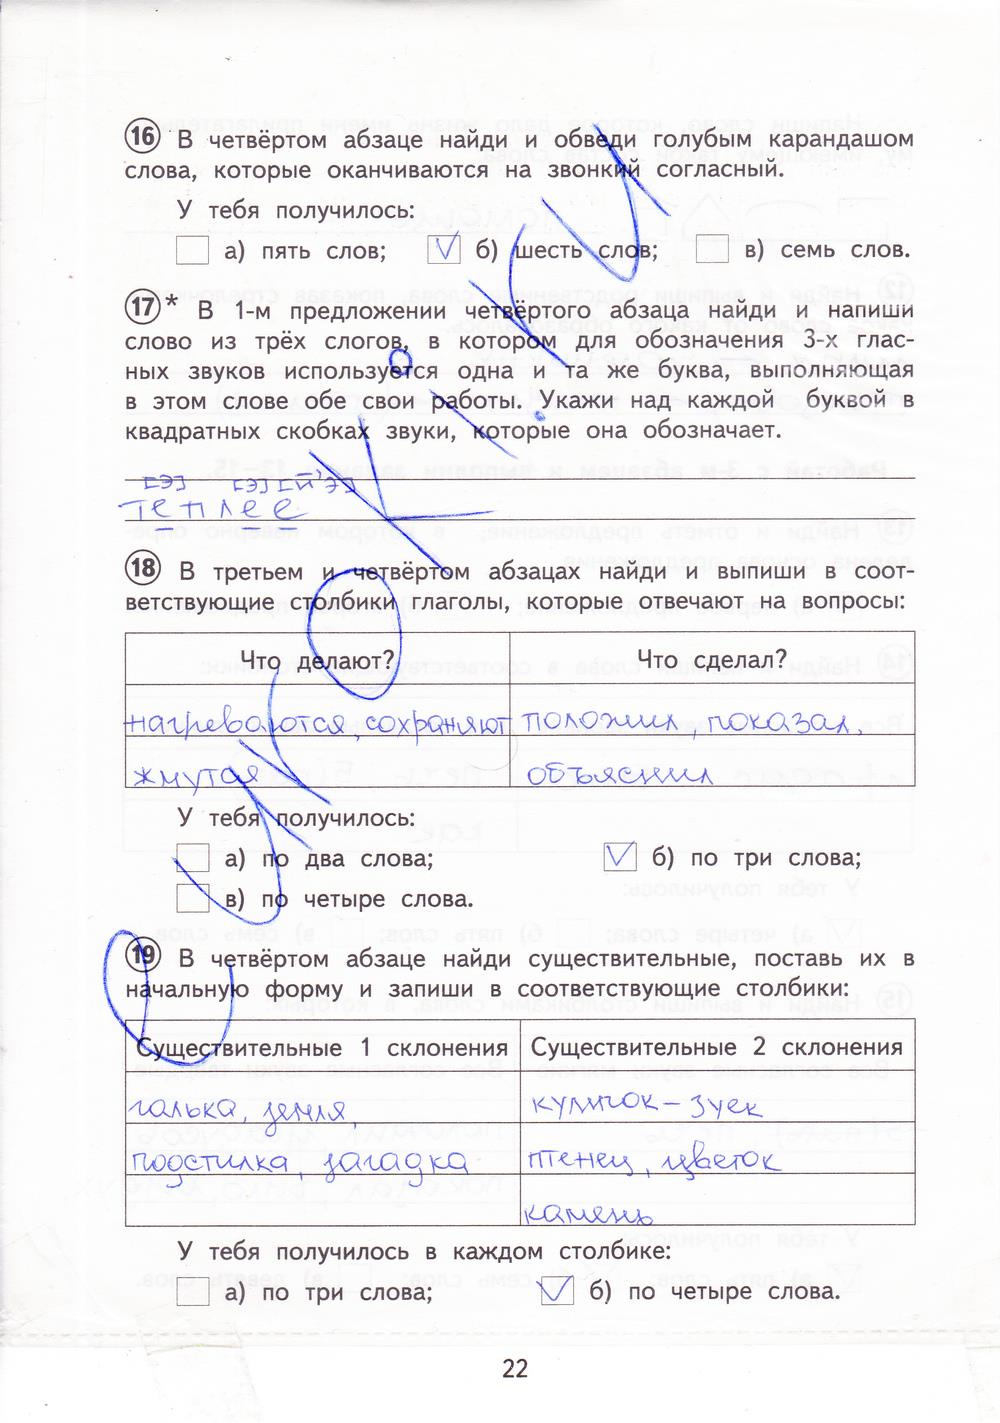 гдз 3 класс тетрадь для проверочных работ страница 22 русский язык Лаврова